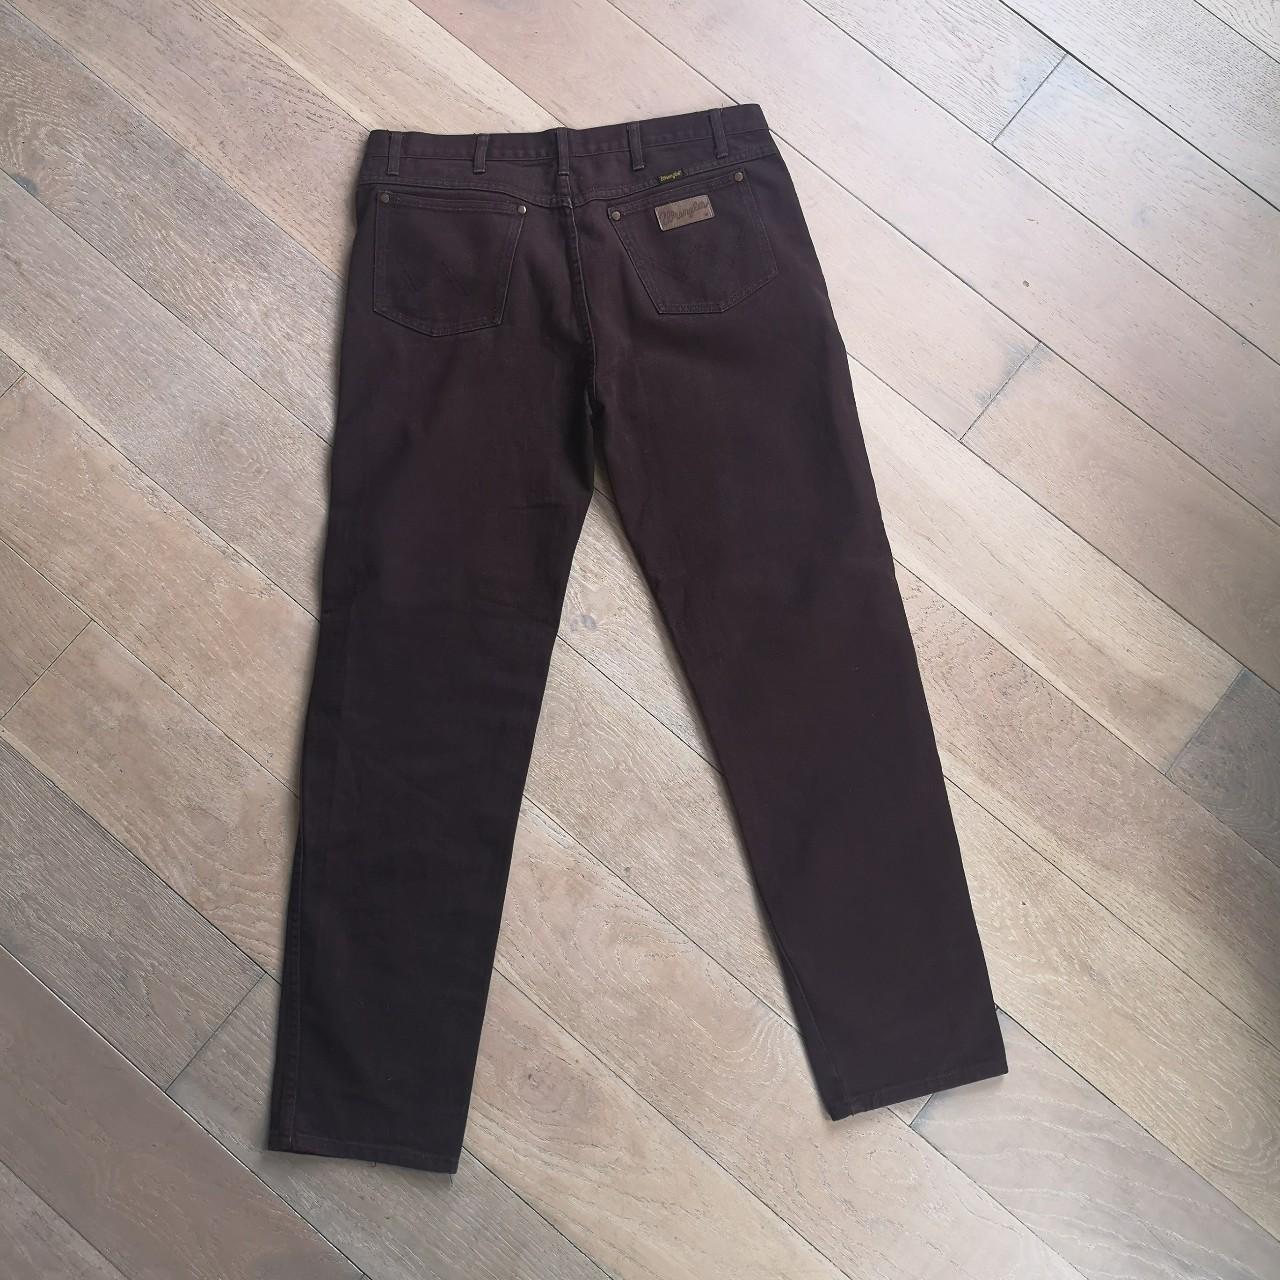 Brown denim Wrangler jeans. Regular fit with slight... - Depop